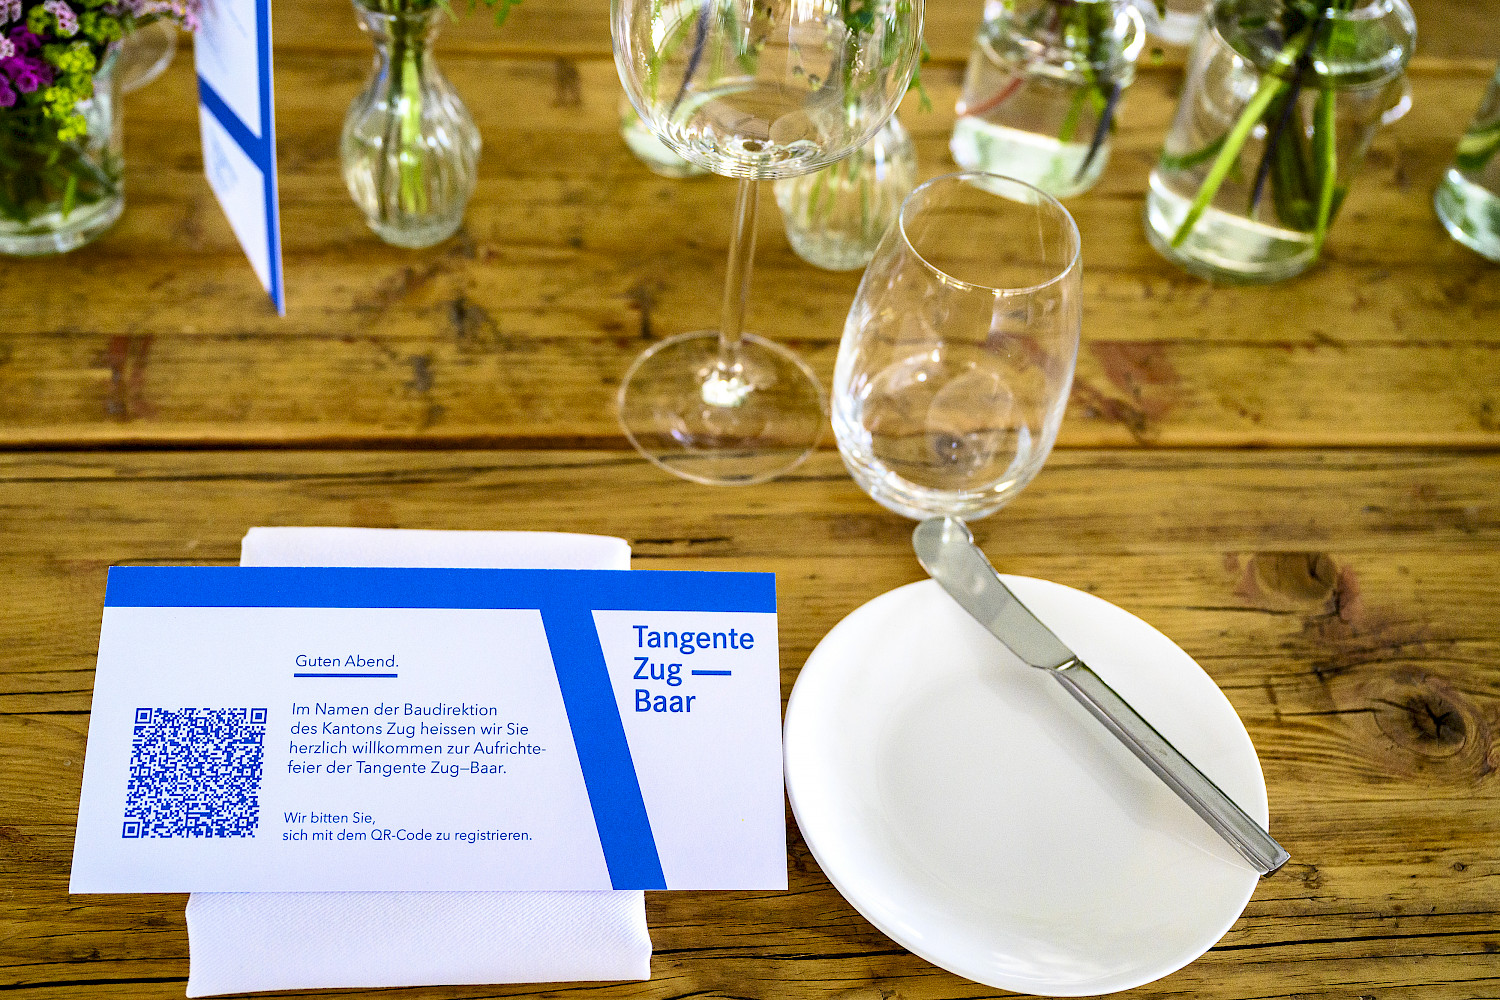 Blueline-Catering sorgte nicht nur für Design auf den Tischen...